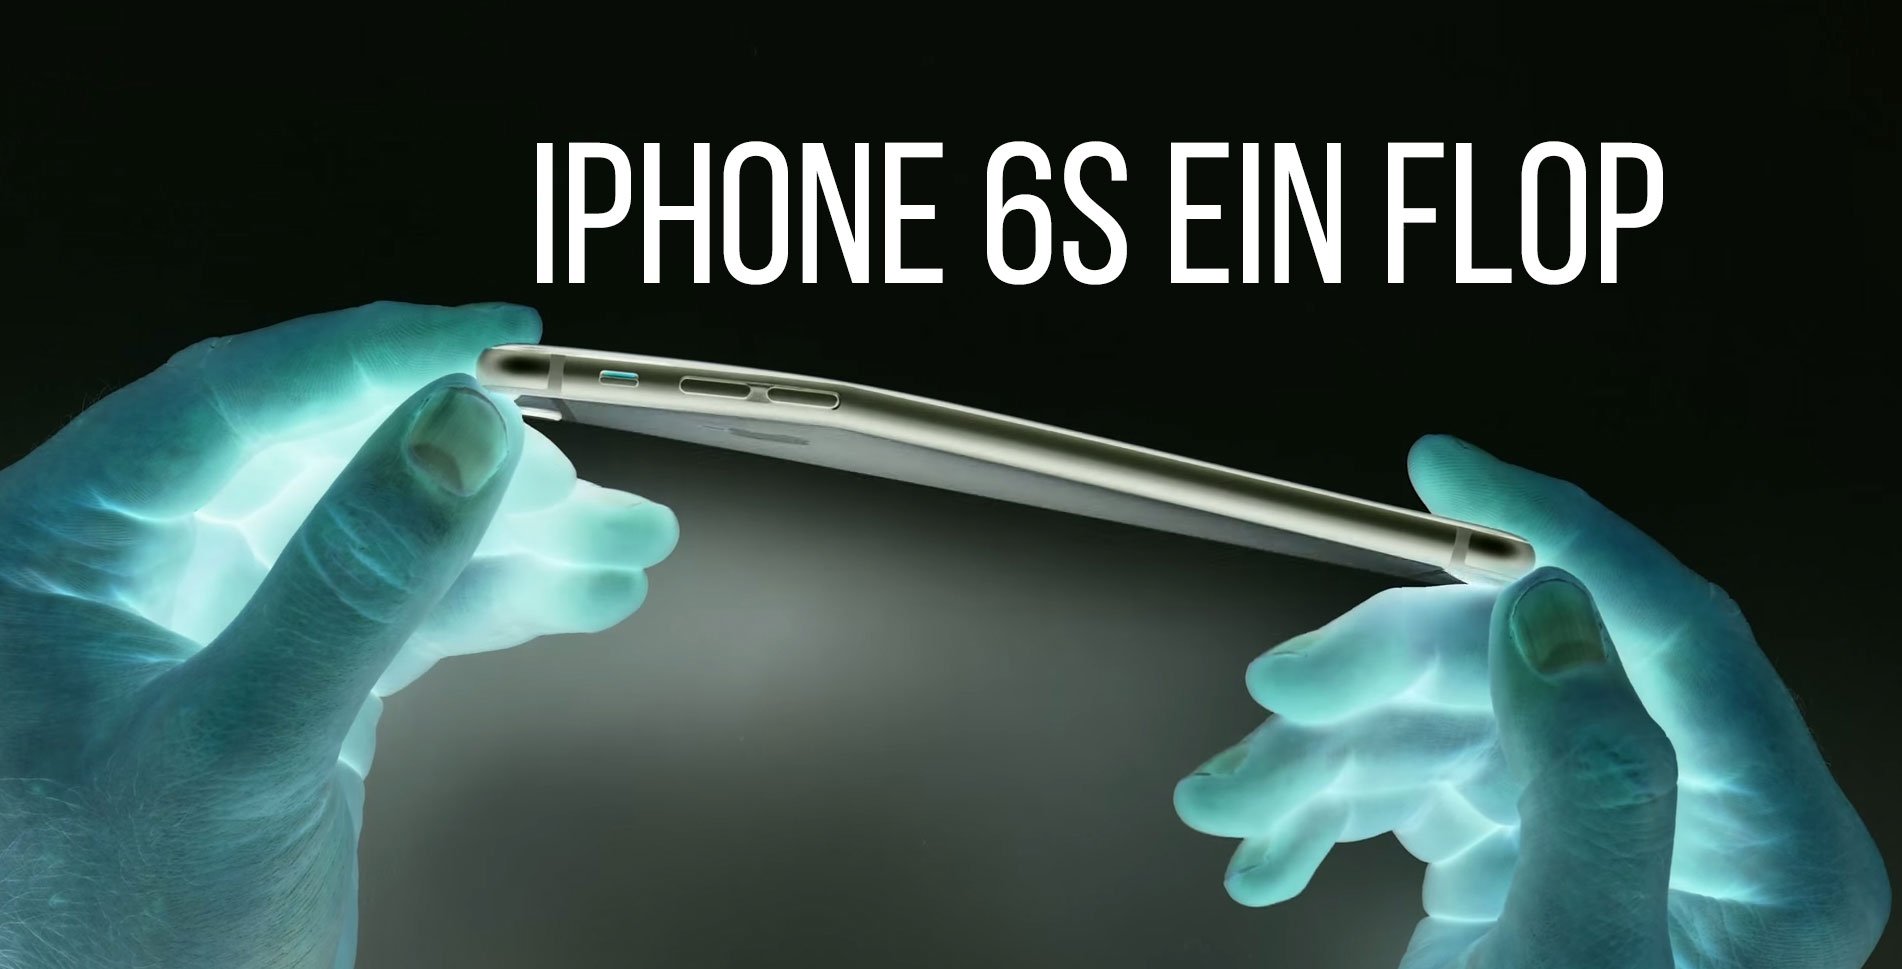 Apple iPhone 6S ein Flop: keiner will das neue iPhone? 2